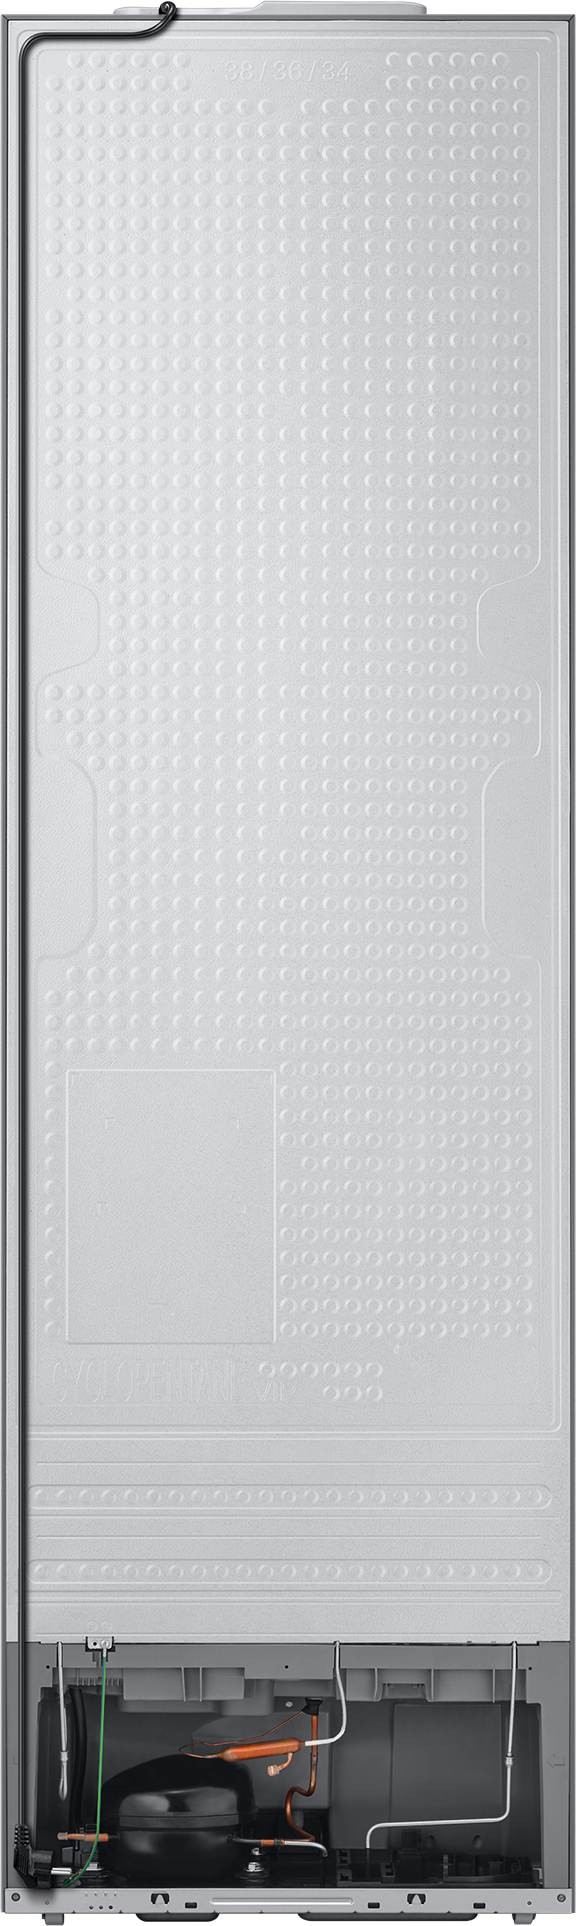 SAMSUNG Réfrigérateur congélateur bas Froid Ventilé No Frost Multi-Flow 276L Gris - RB38T674ESA